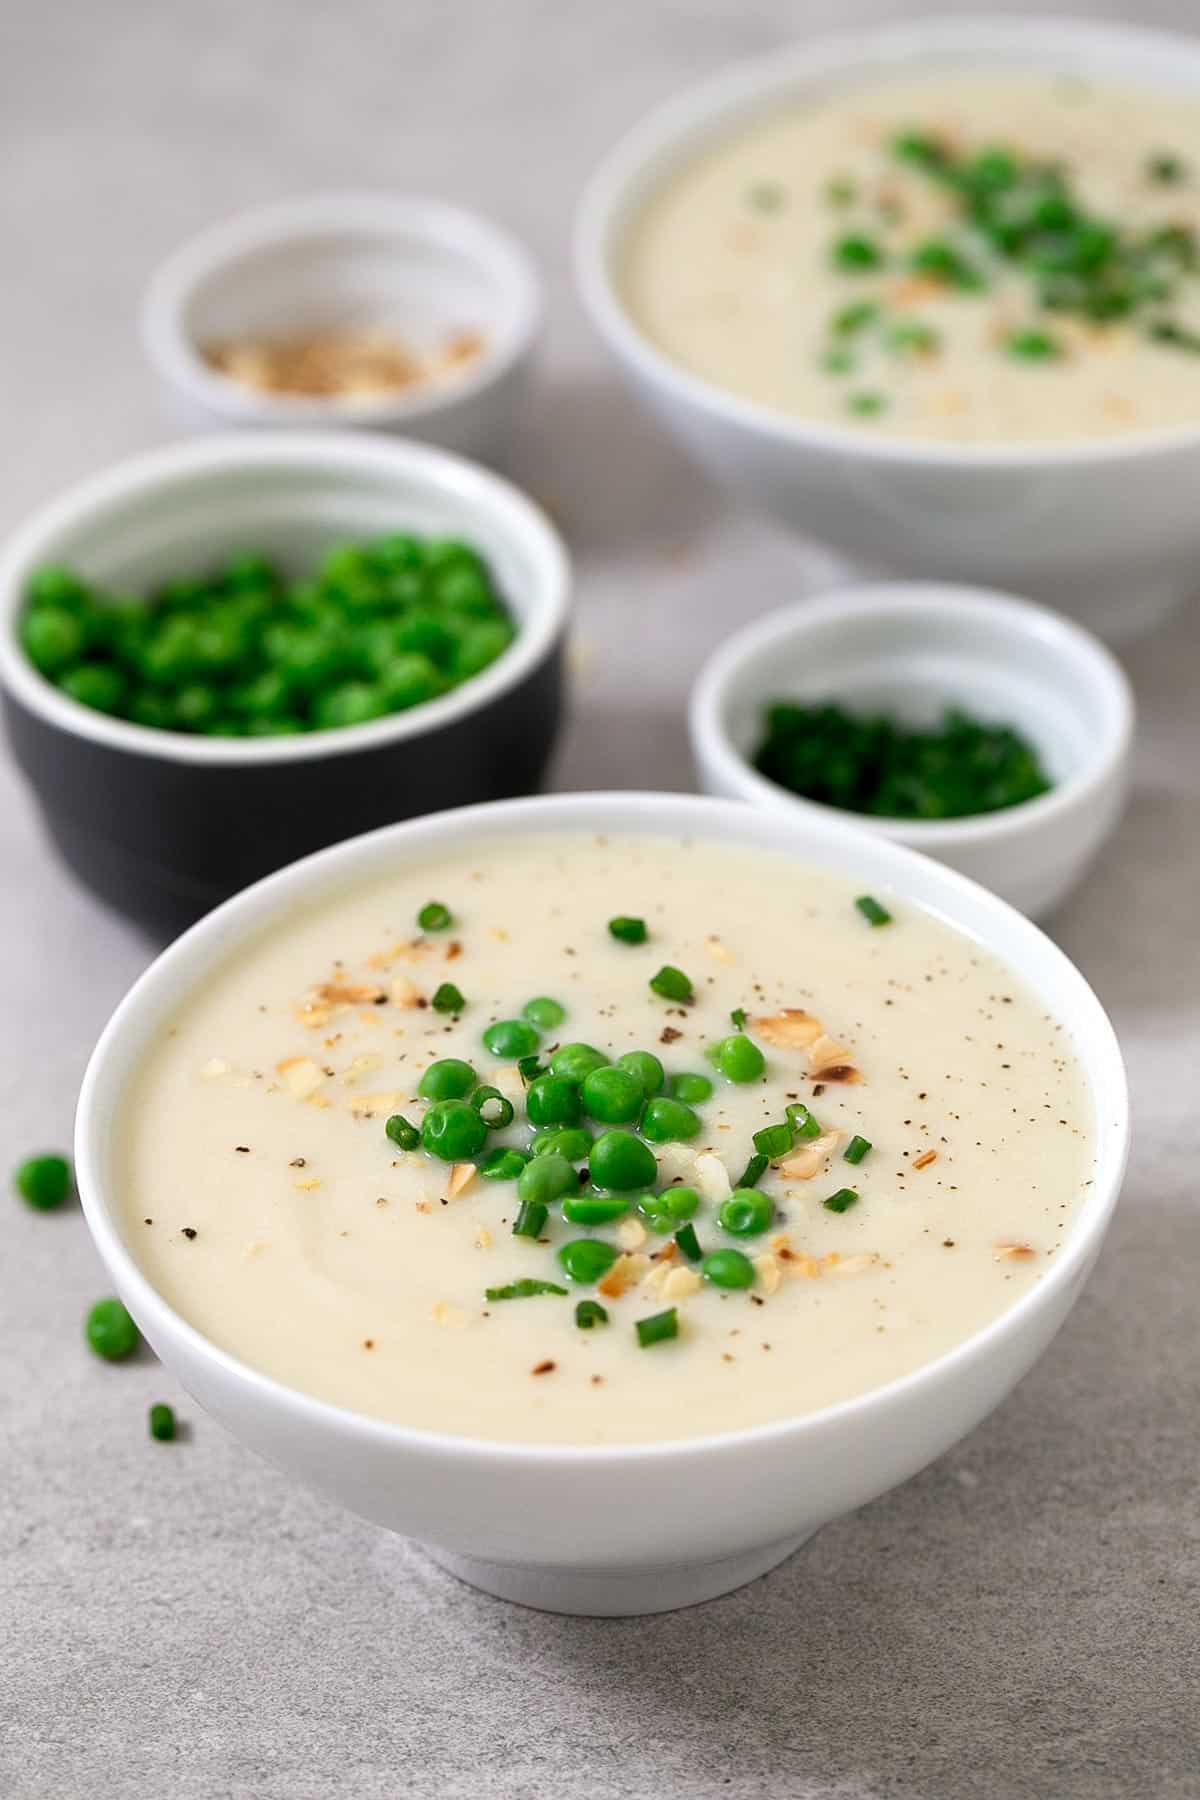 Sopa de coliflor. - Esta sopa de coliflor es muy ligera, simple y está muy rica. Cuando hace frío las sopas nos ayudan a entrar en calor y se preparan en un momento.